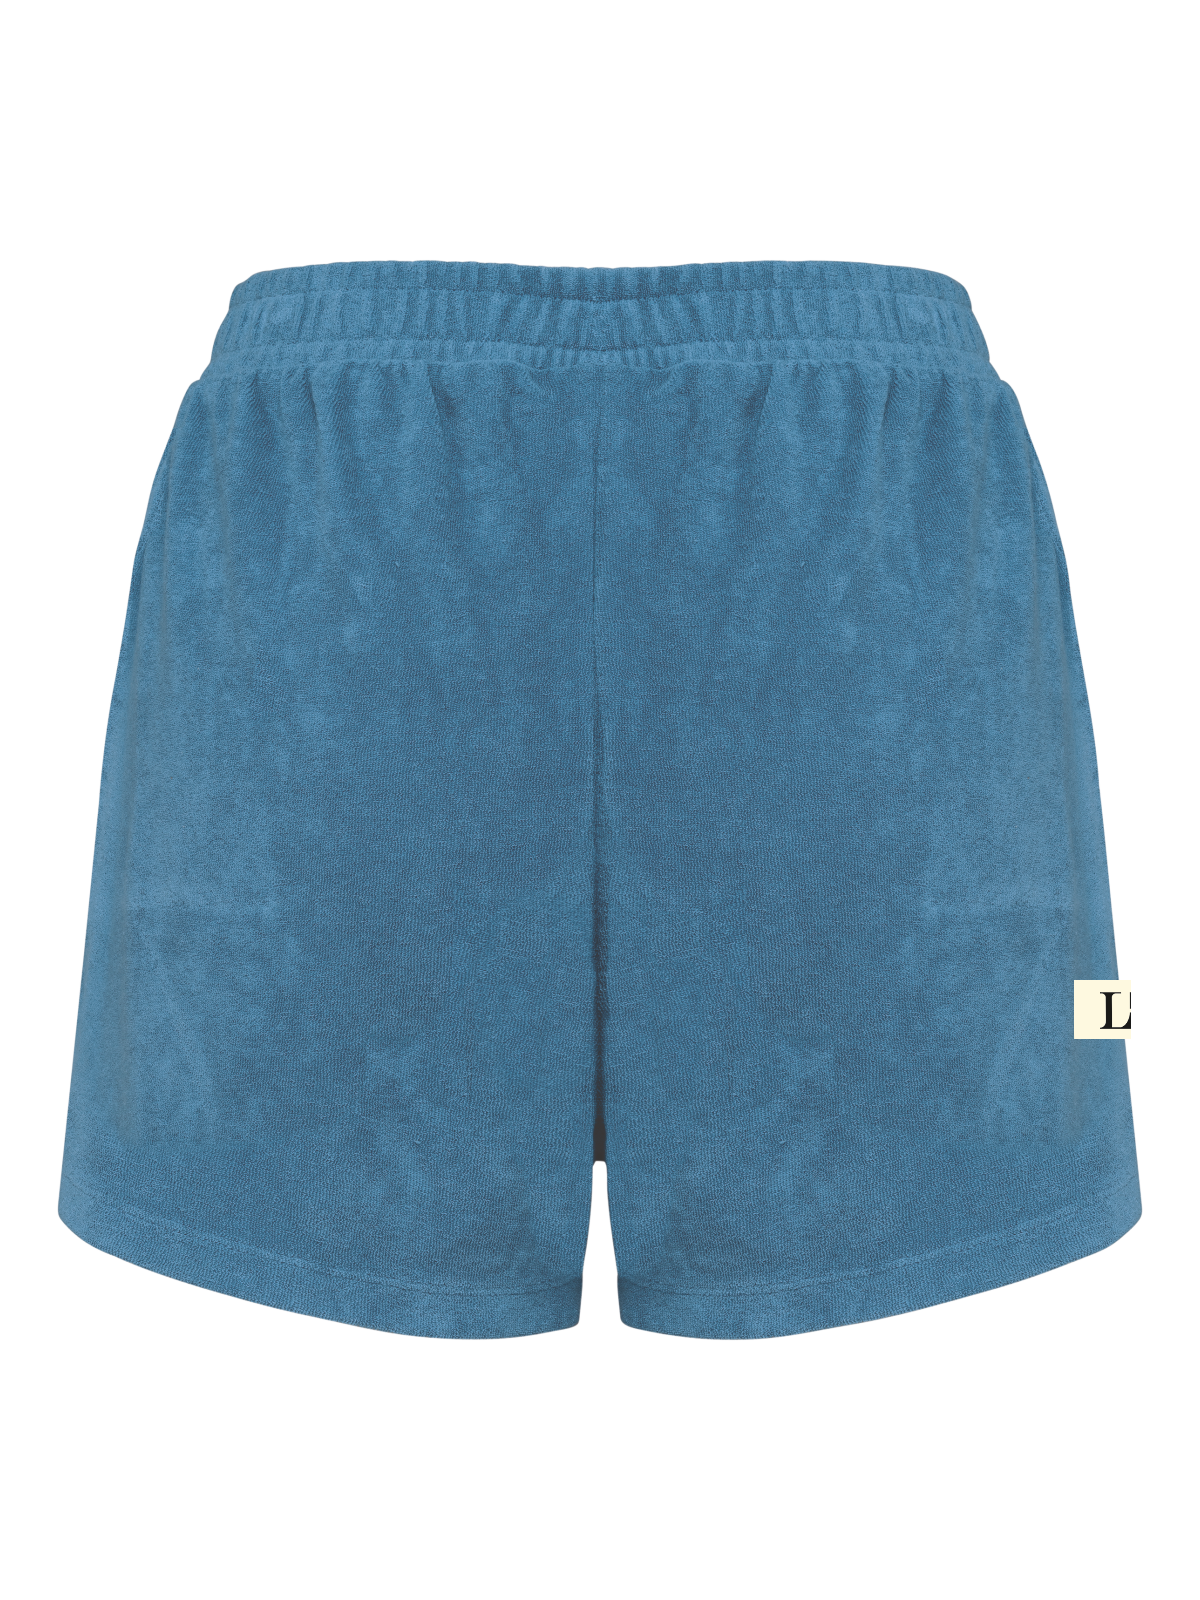 LL Terry Towel Shorts rivera blue